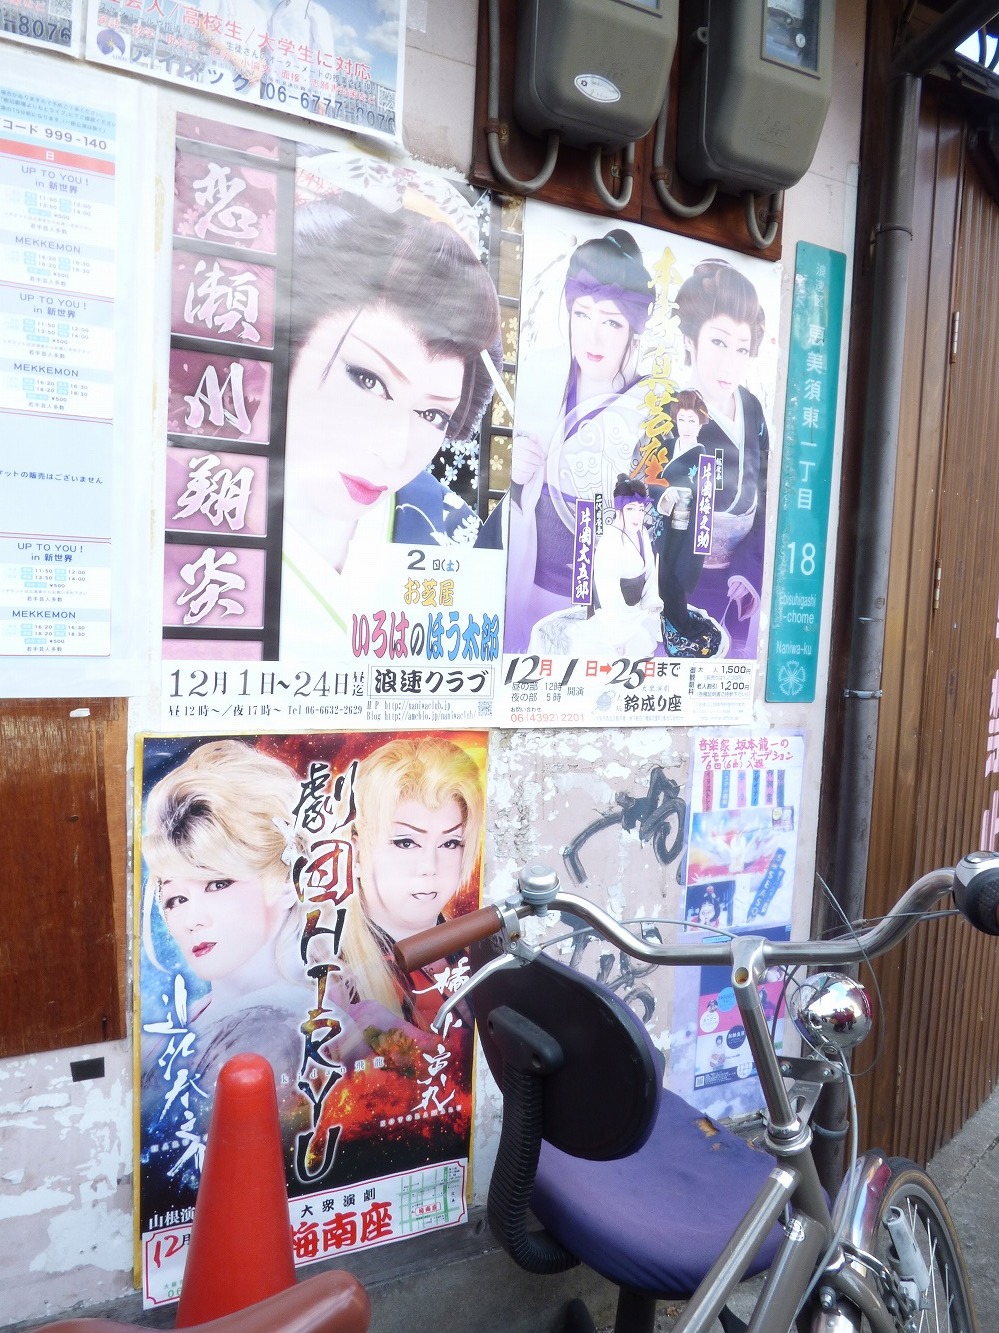 浪速クラブ(左上)・鈴成り座(右上)・梅南座(左下)の各ポスター。うち、浪速クラブのポスターは演目の部分が毎日貼り替えられている。